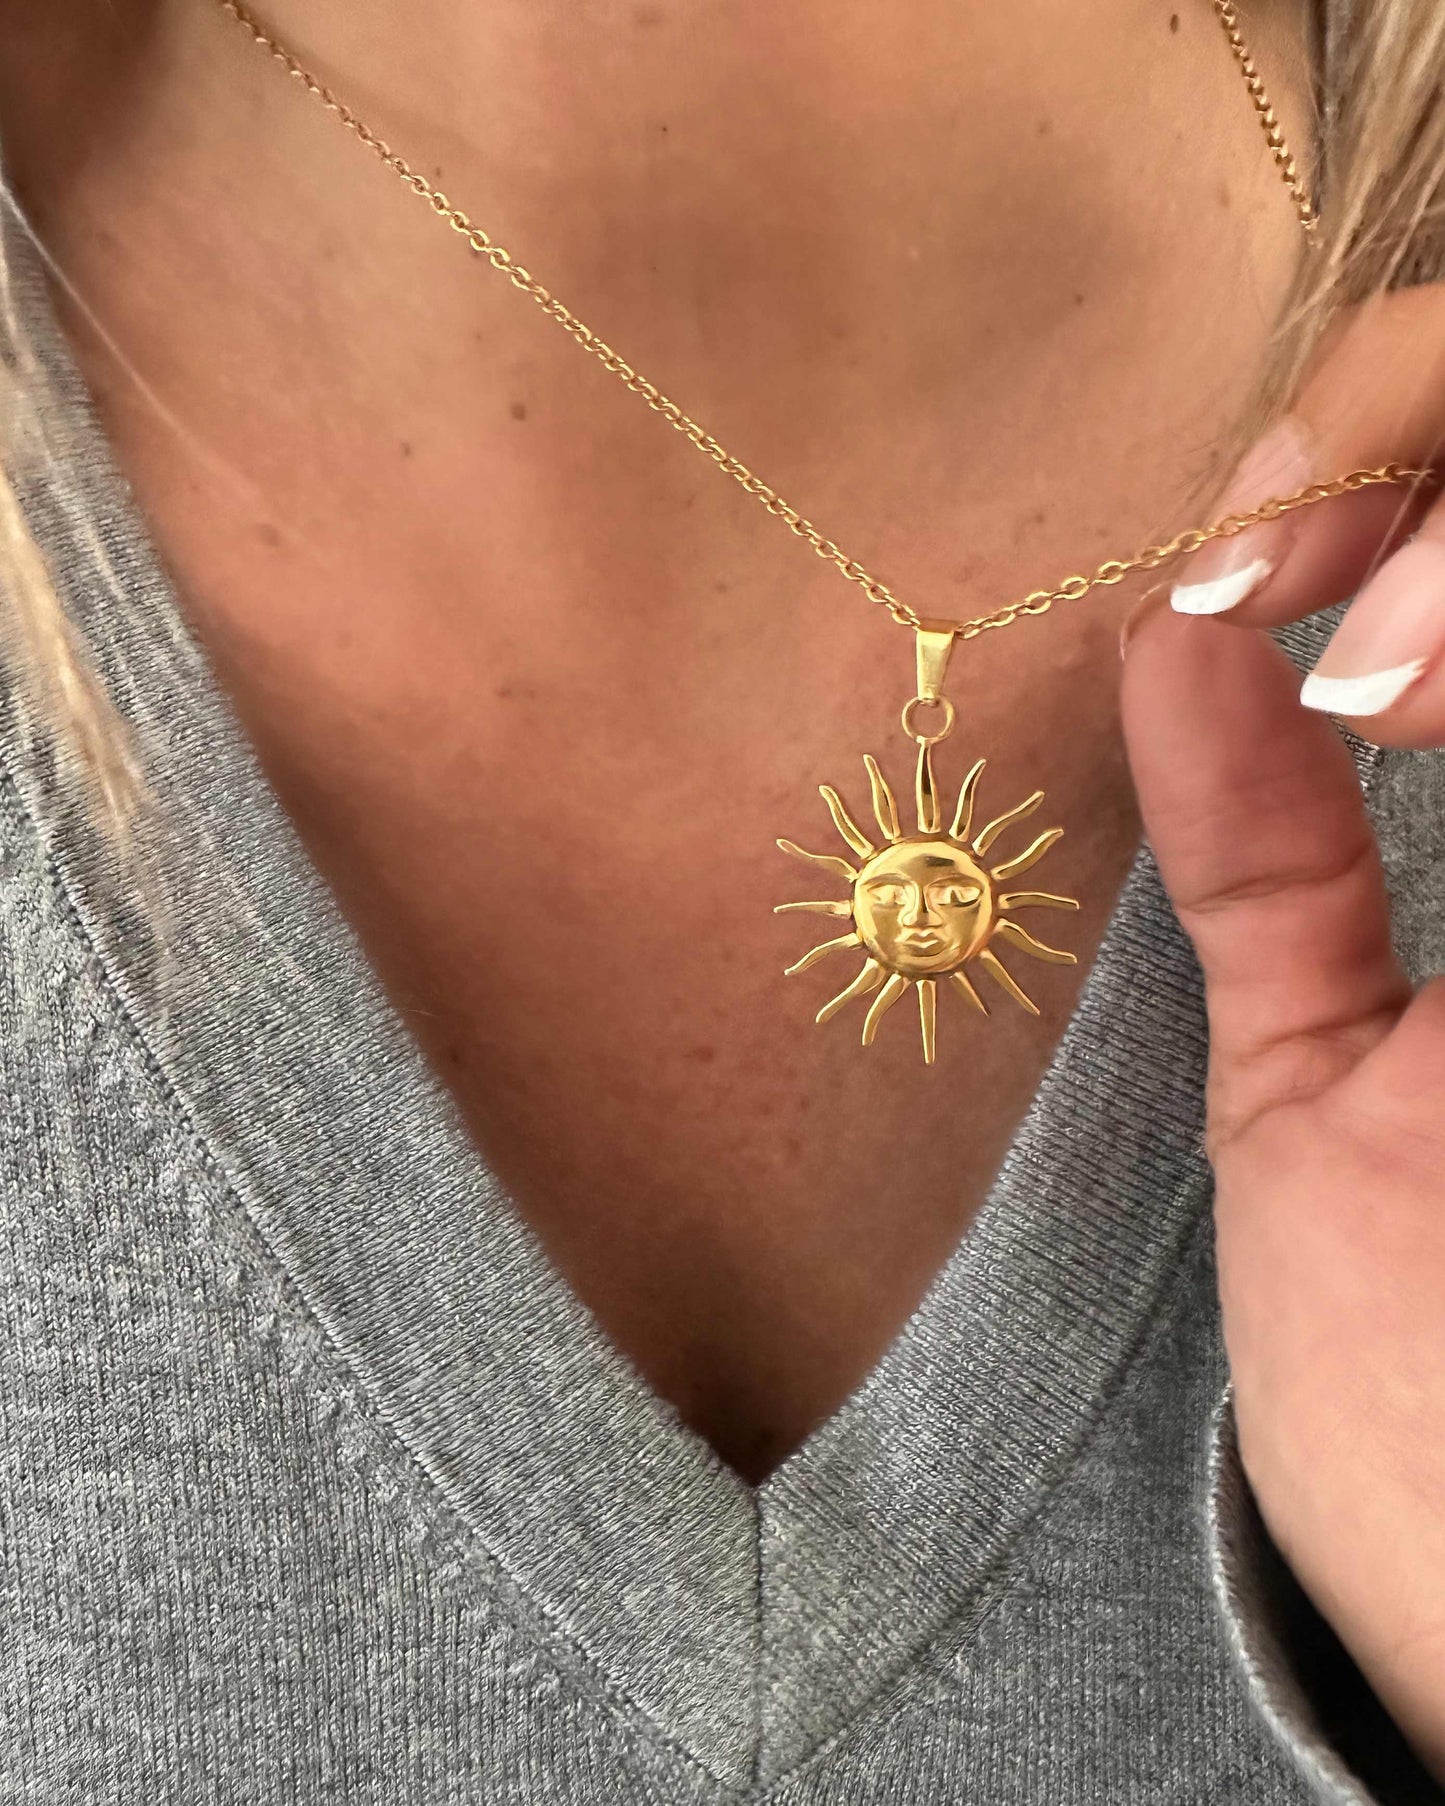 Este collar con colgante de sol, es de cadena fina y lleva una carita labrada en el colgante sol. Fabricado en acero inoxidable bañado en oro.